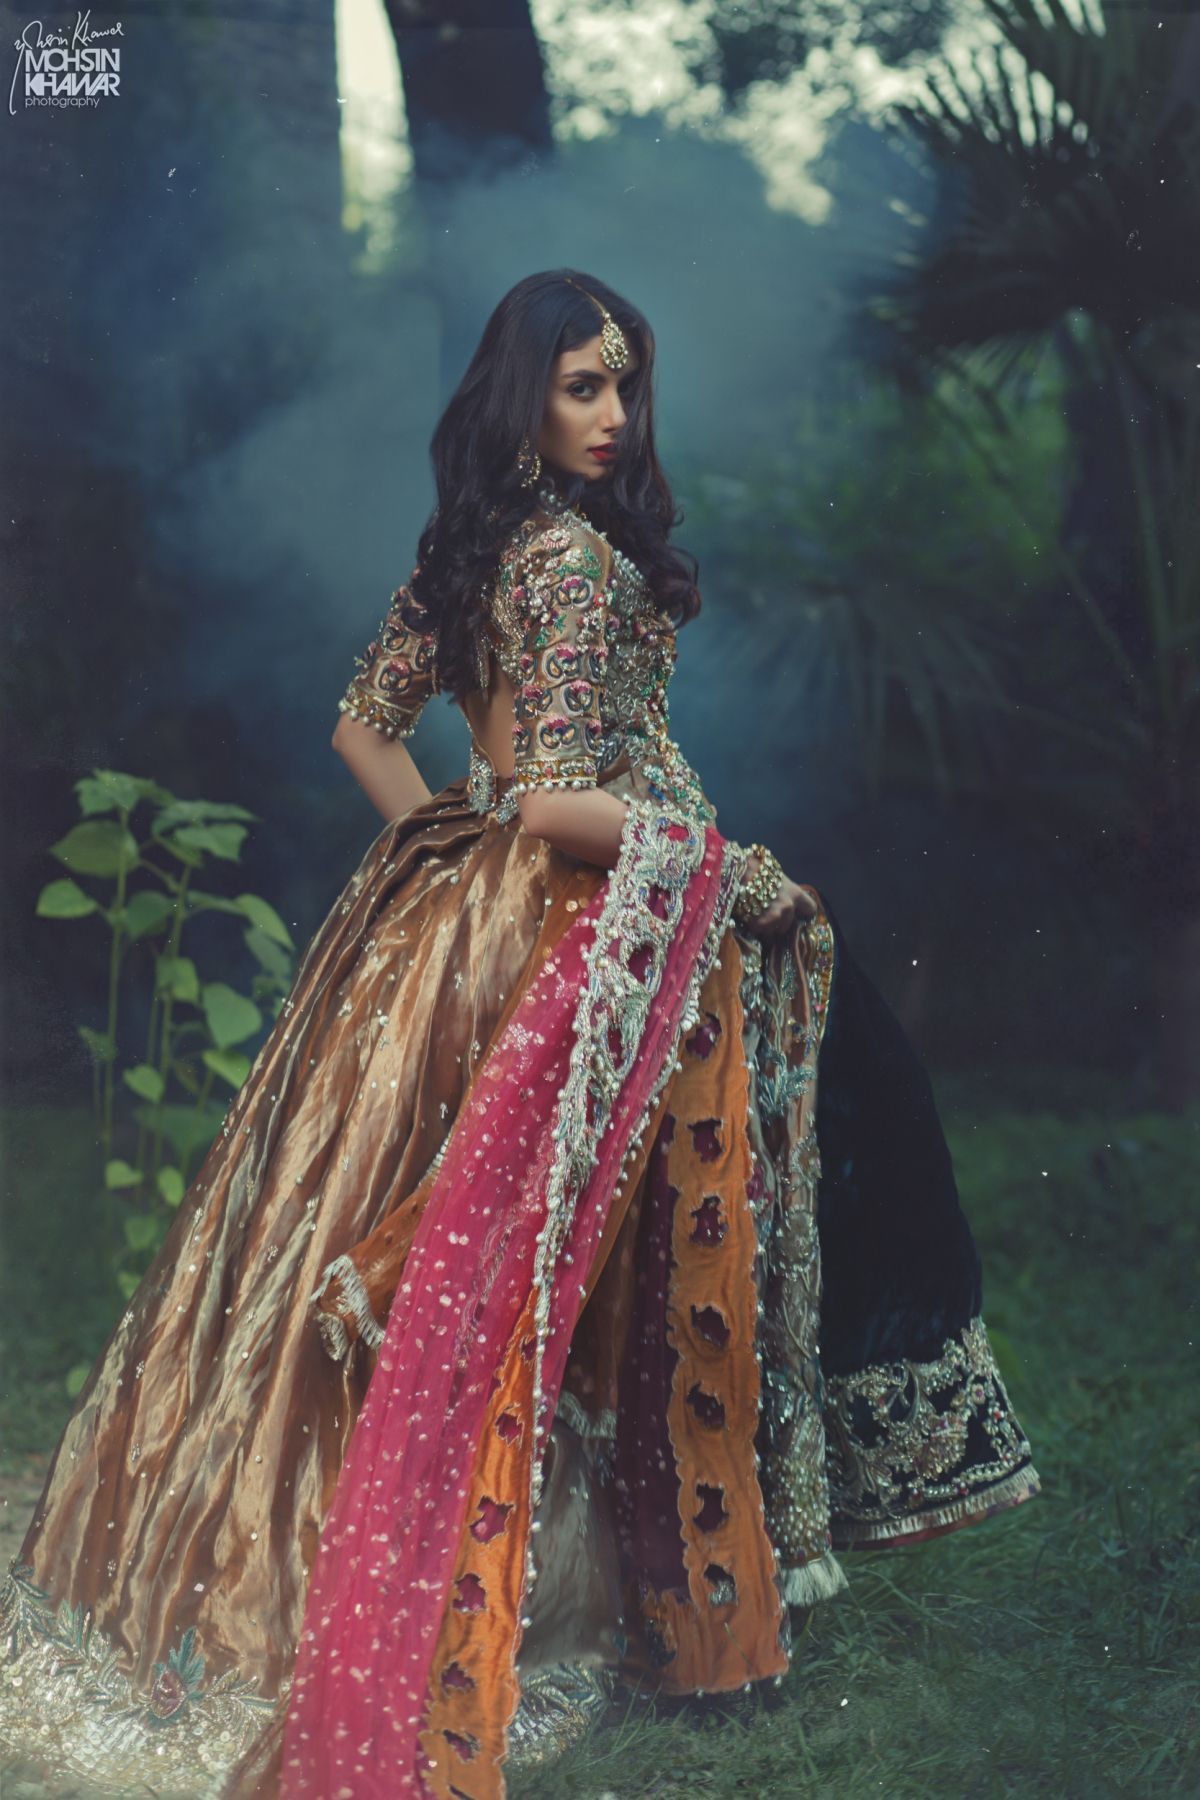 13 wedding Indian fashion ideas